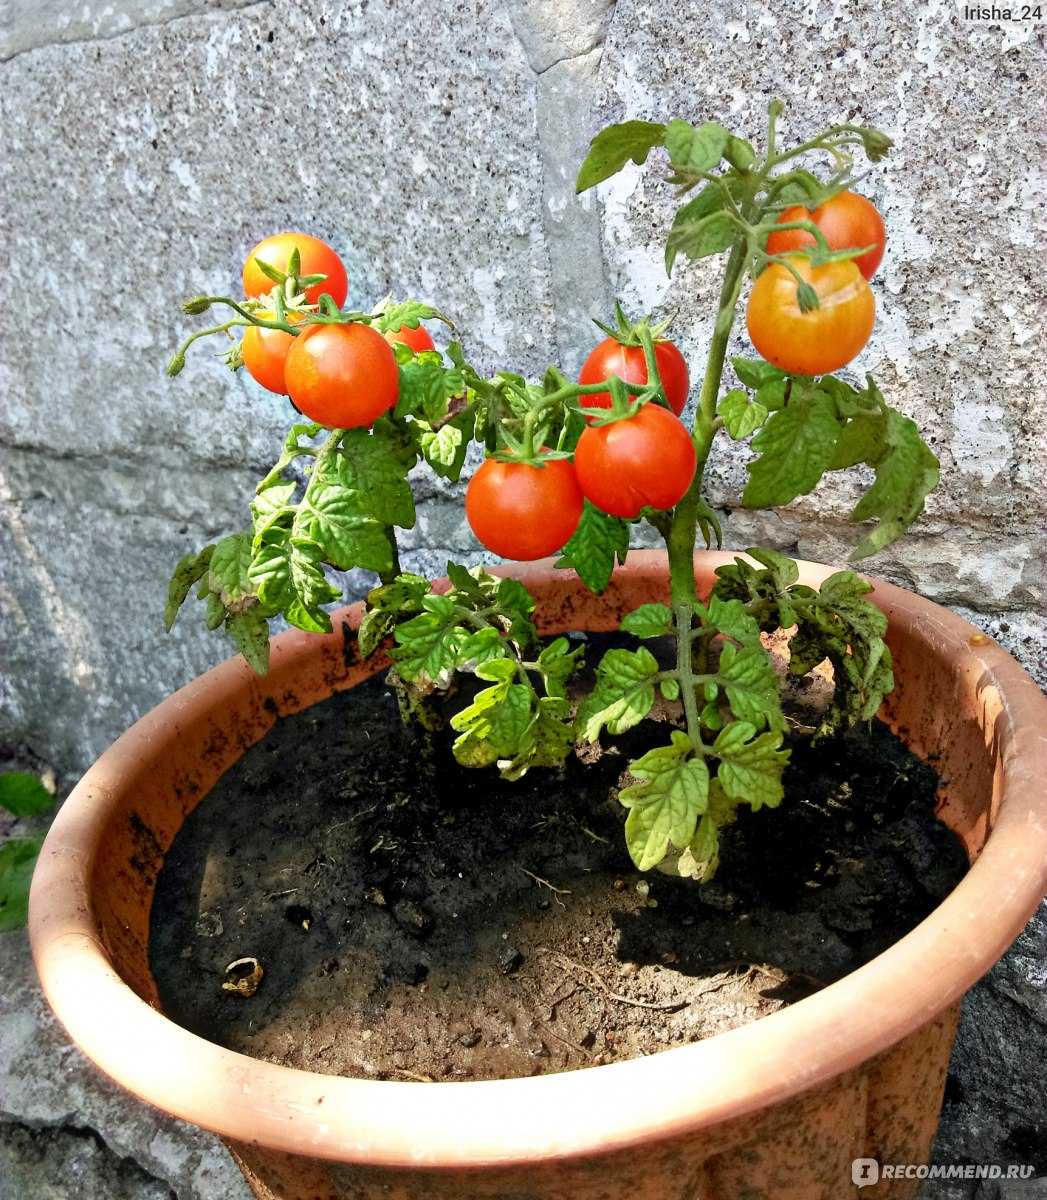 Как вырастить помидоры дома: как посадить комнатные томаты в горшке в условиях квартиры или на лоджии, можно ли это делать зимой, а еще пошаговая инструкция процесса